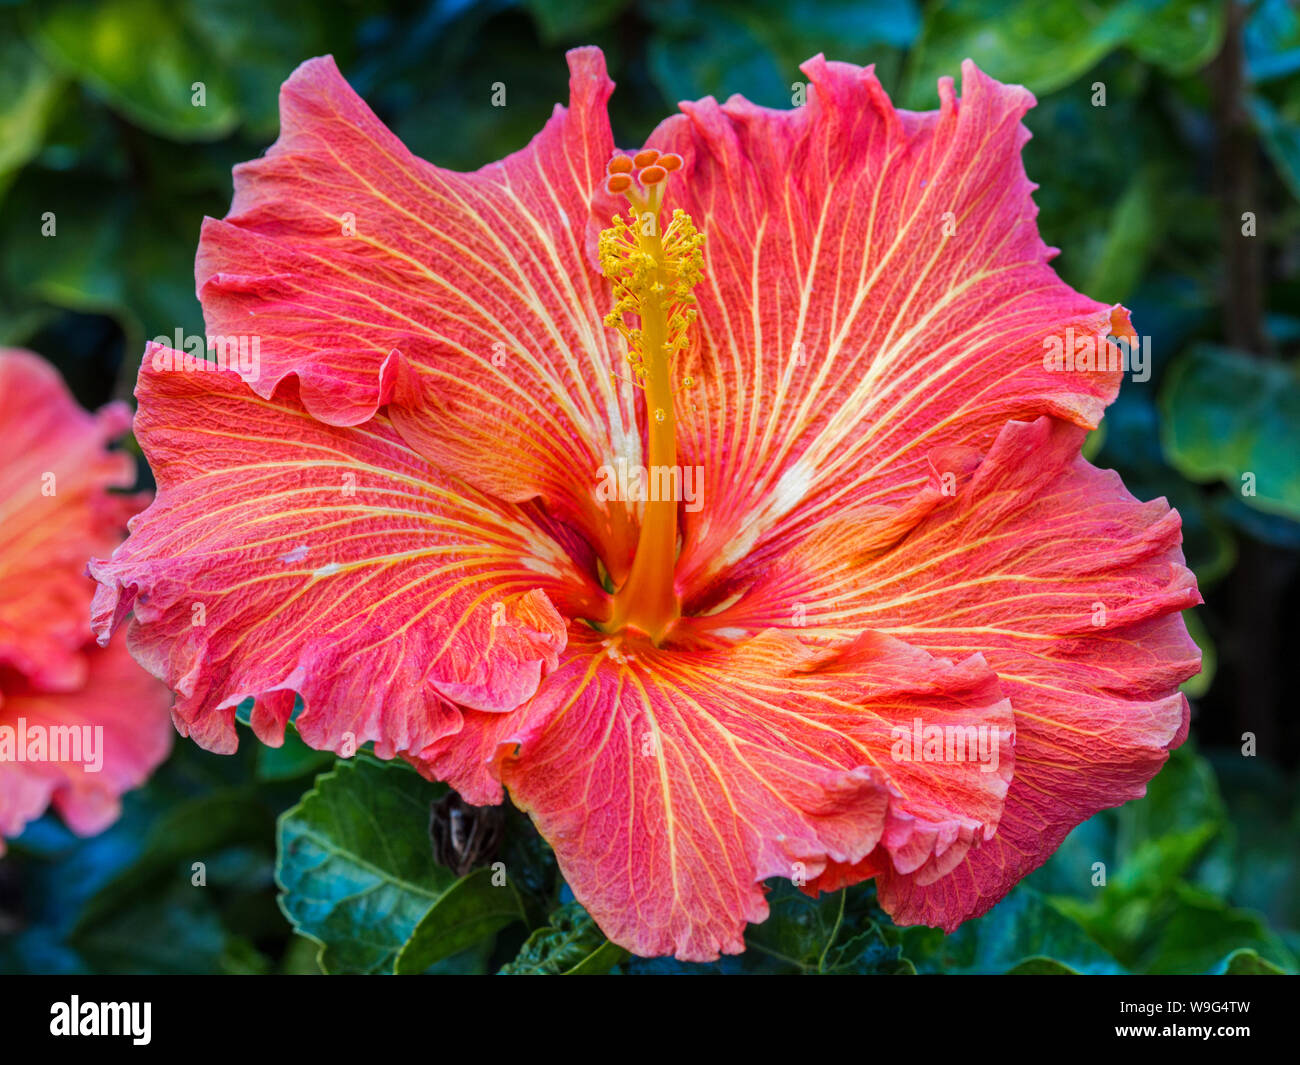 Hibiscus flowers Stock Photo